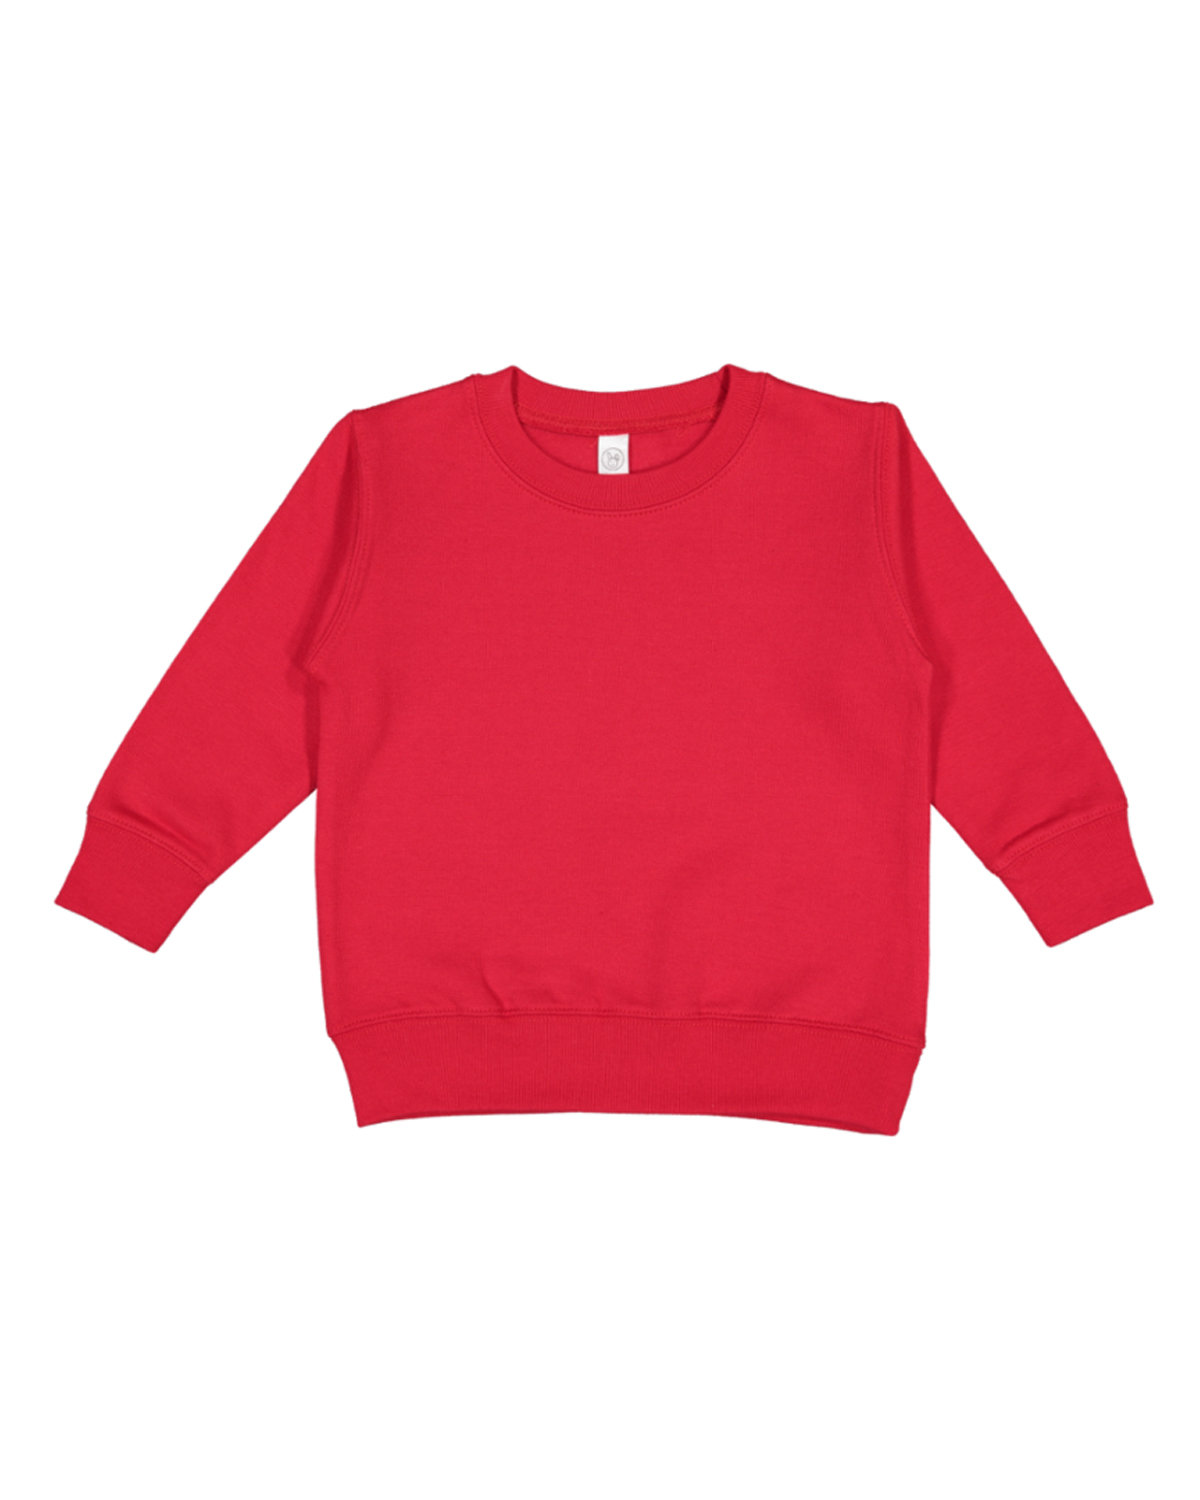 Rabbit Skins Toddler Fleece Sweatshirt RED 